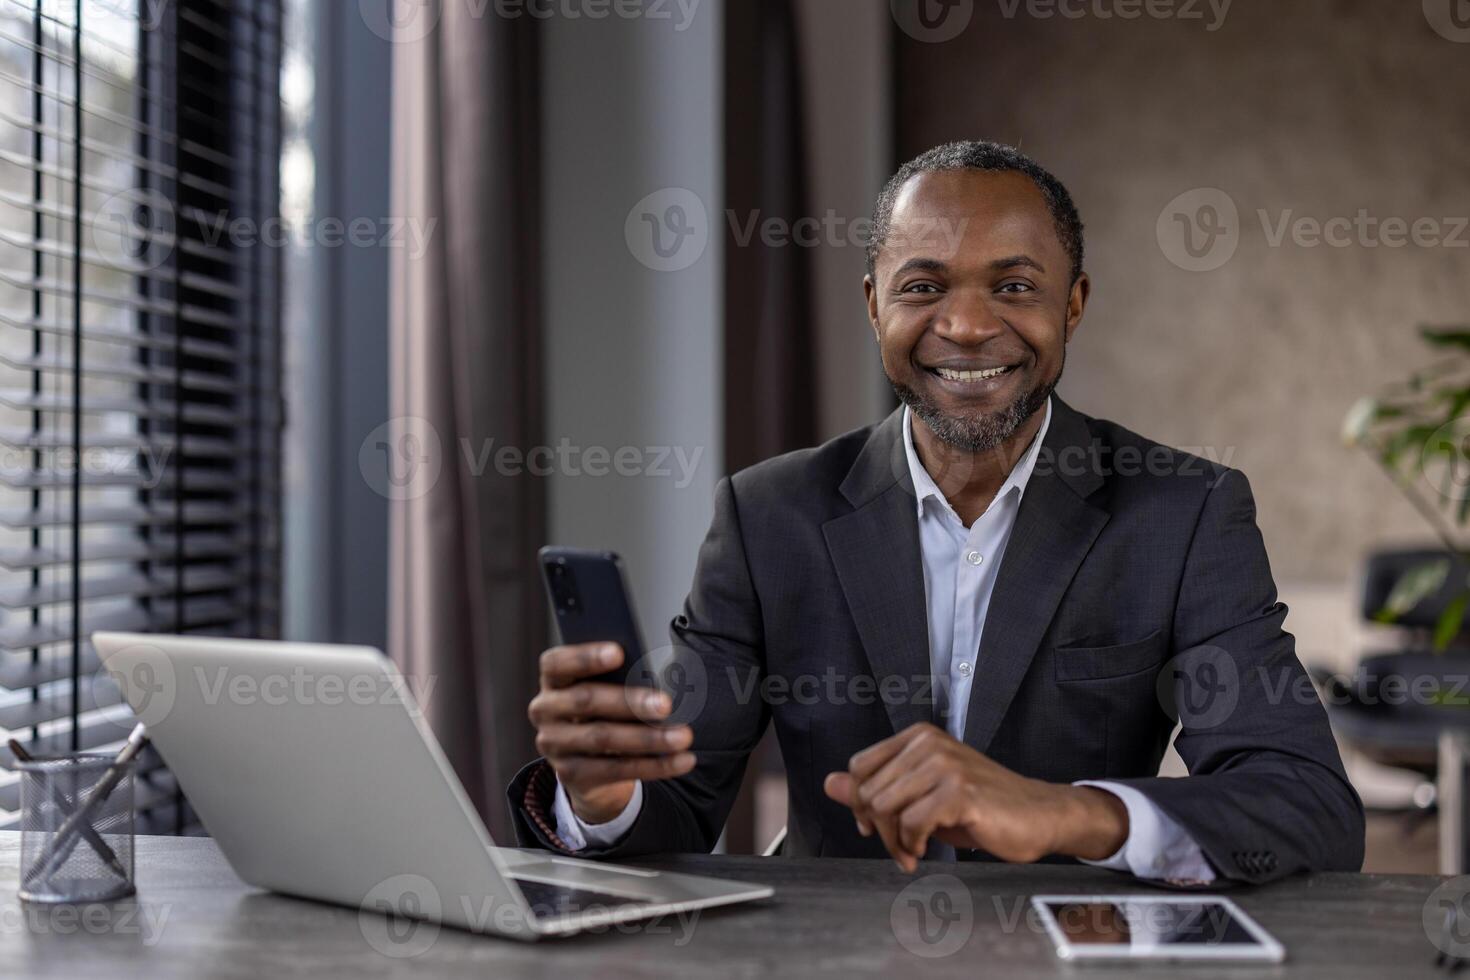 retrato de alegre maduro africano americano jefe en negocio traje, mayor empresario sonriente y mirando a cámara con teléfono en manos, hombre trabajando dentro oficina con computadora portátil, utilizando aplicación foto